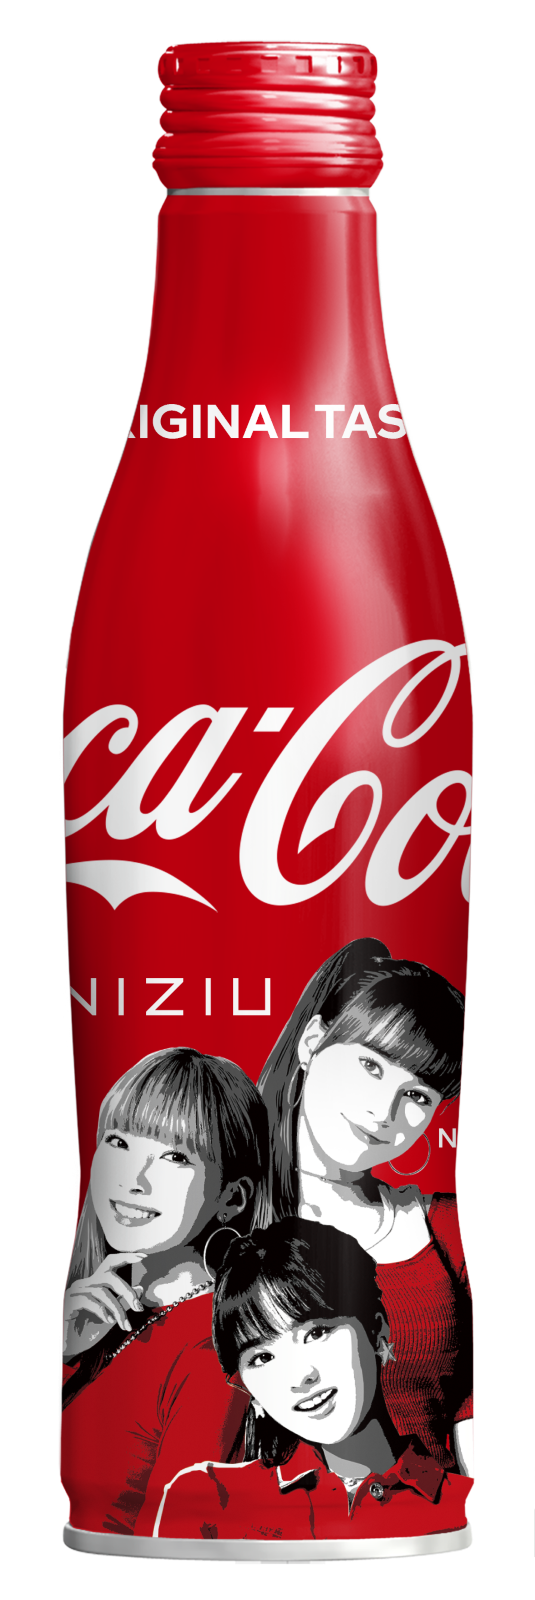 パーティを彩るご馳走や コカ コーラ スリムボトル NiziU 限定デザイン 3種セット 未開封